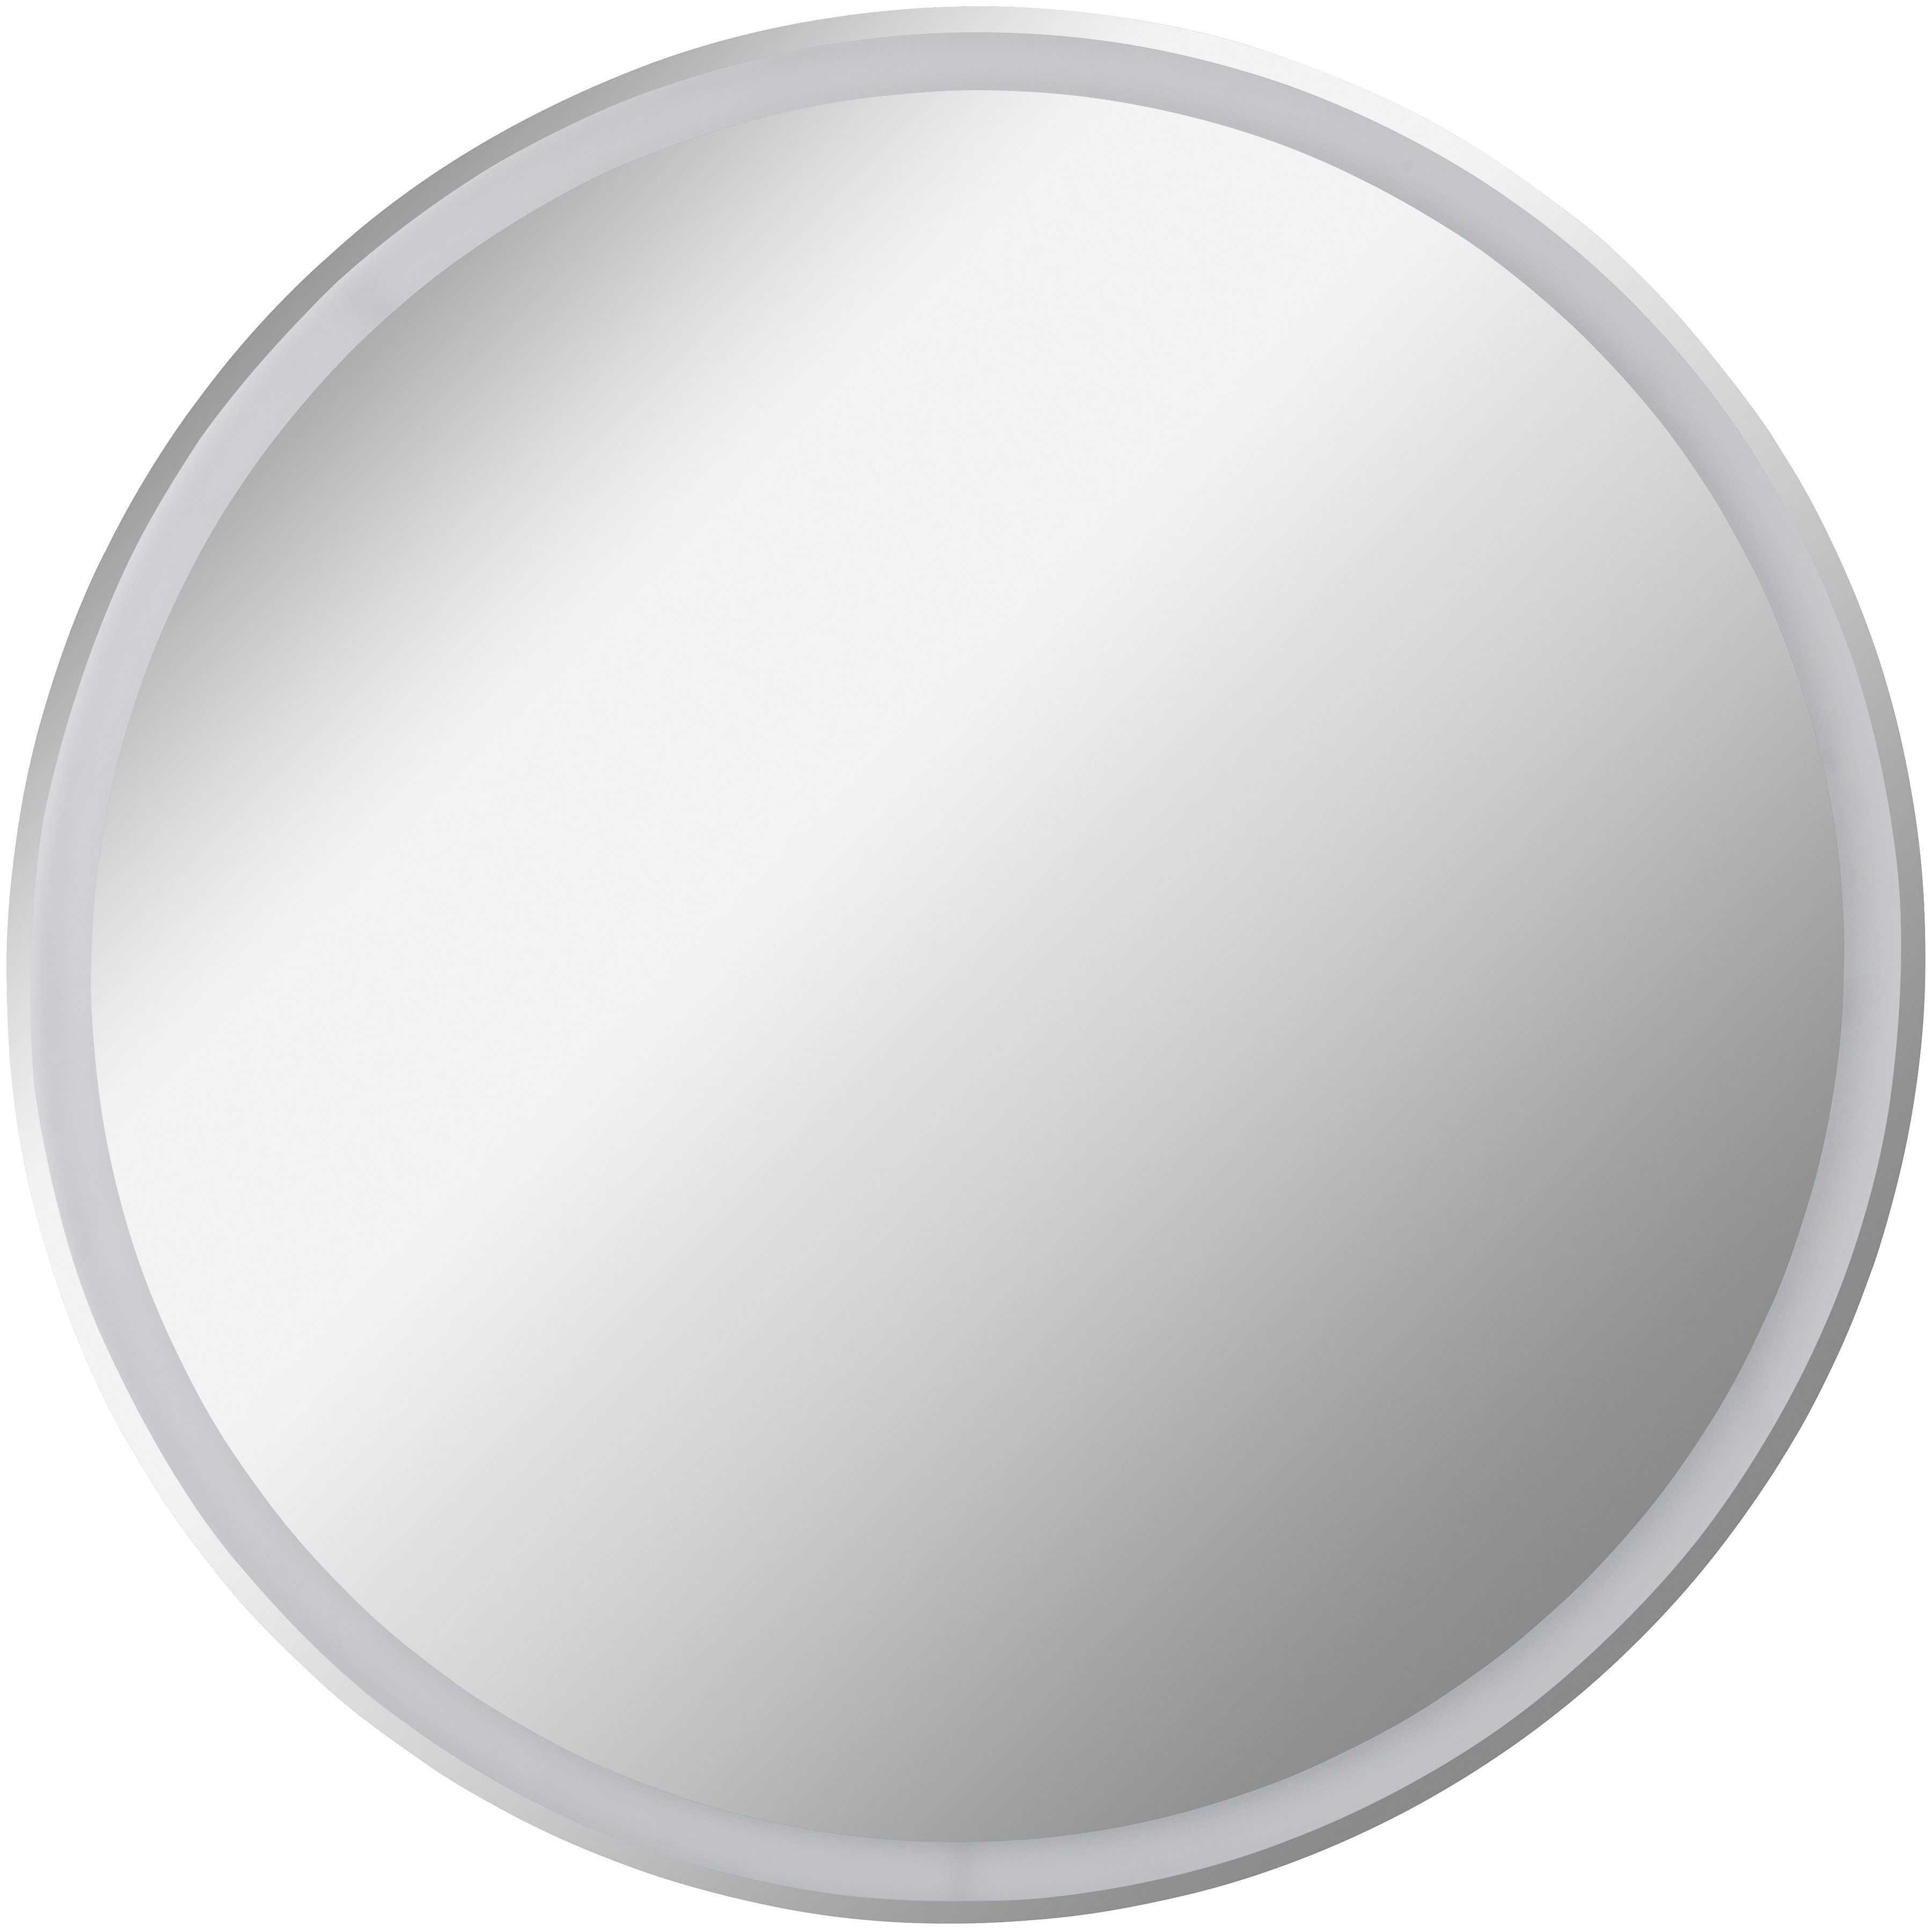 FACKELMANN LED-Lichtspiegel Mirrors | Schminkspiegel